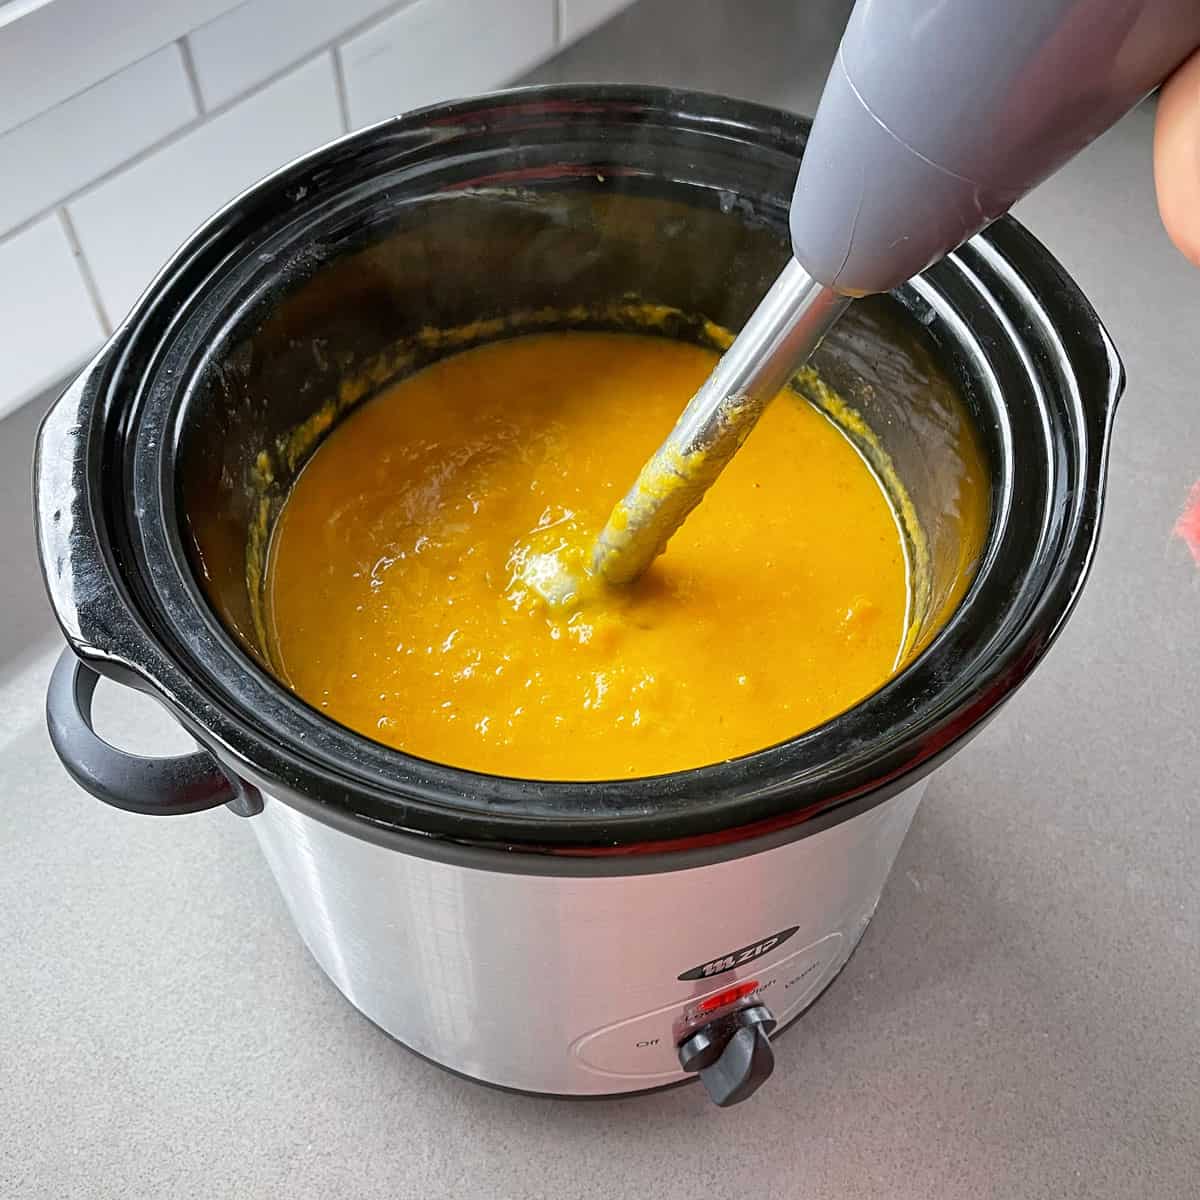 A stick blender blending pumpkin soup in a slow cooker.